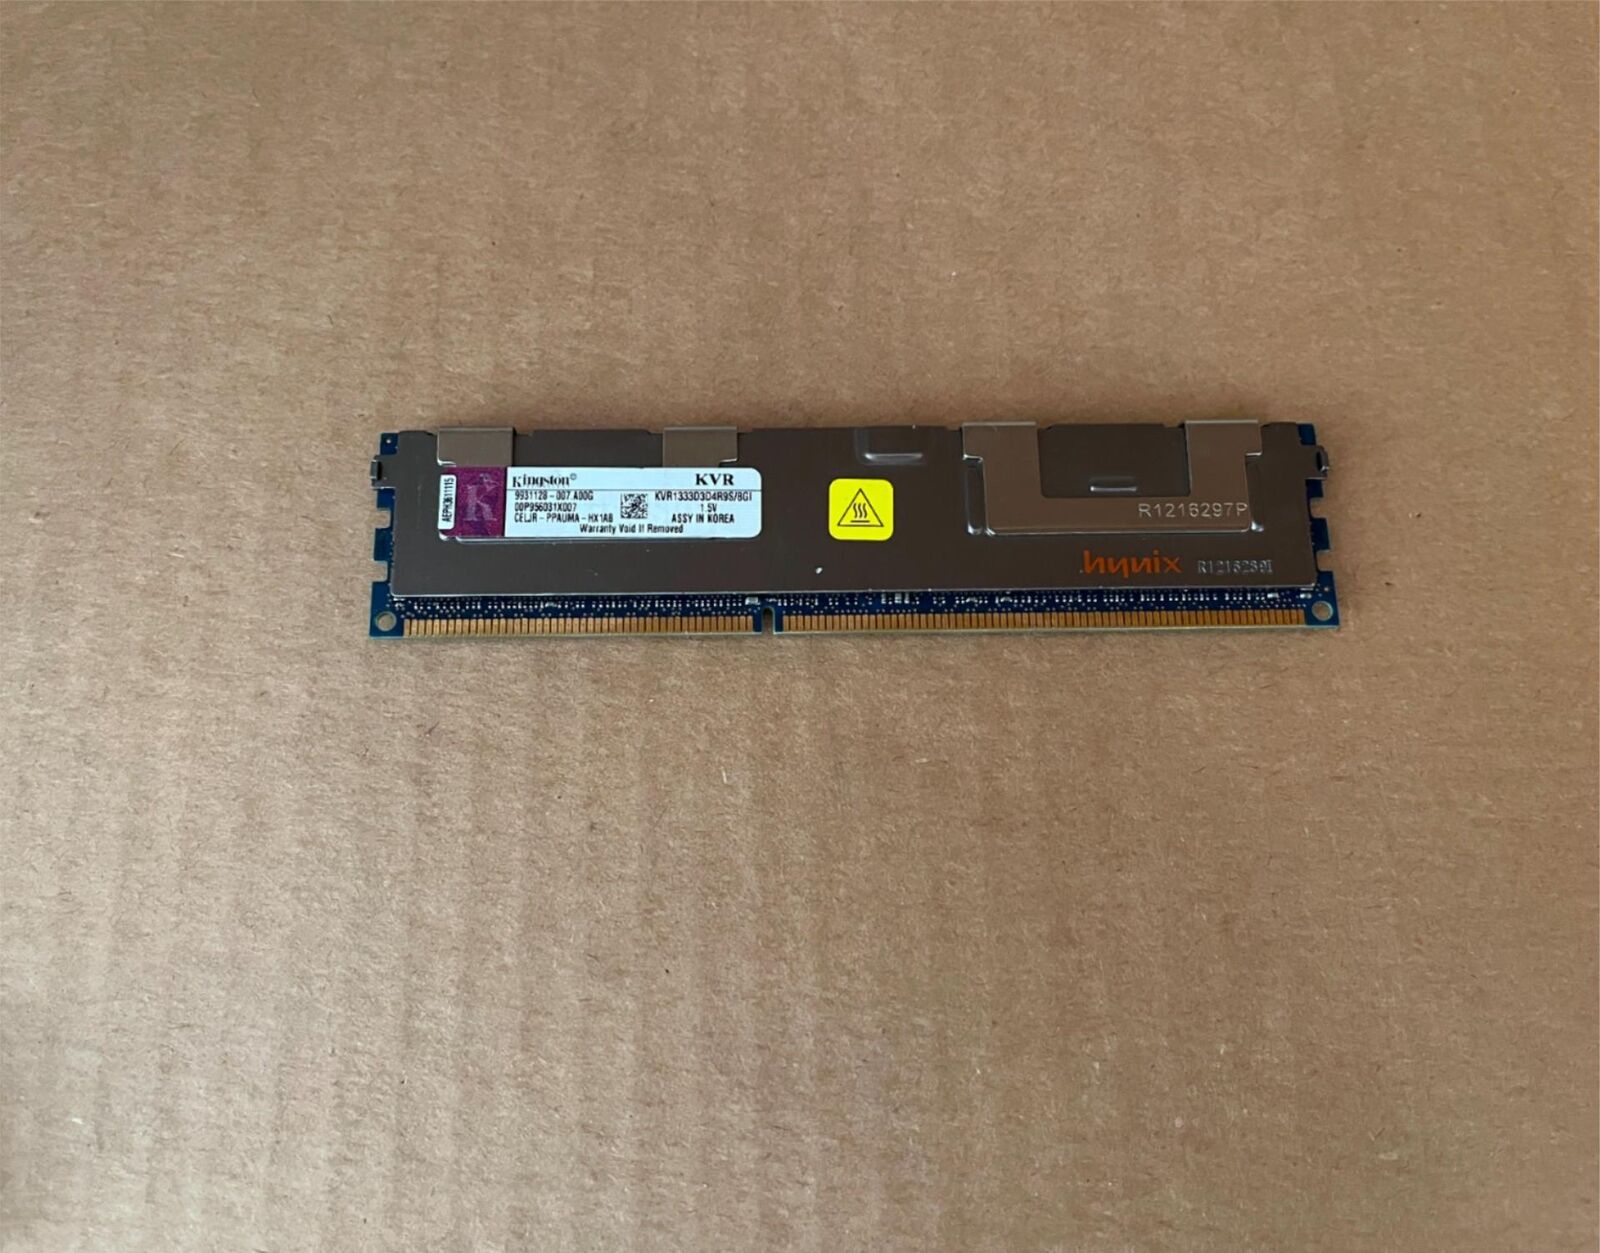 KINGSTON 8GB DDR3 PC3-10600 SERVER MEMORY KVR1333D3D4R9S/8GI B7-1(6)